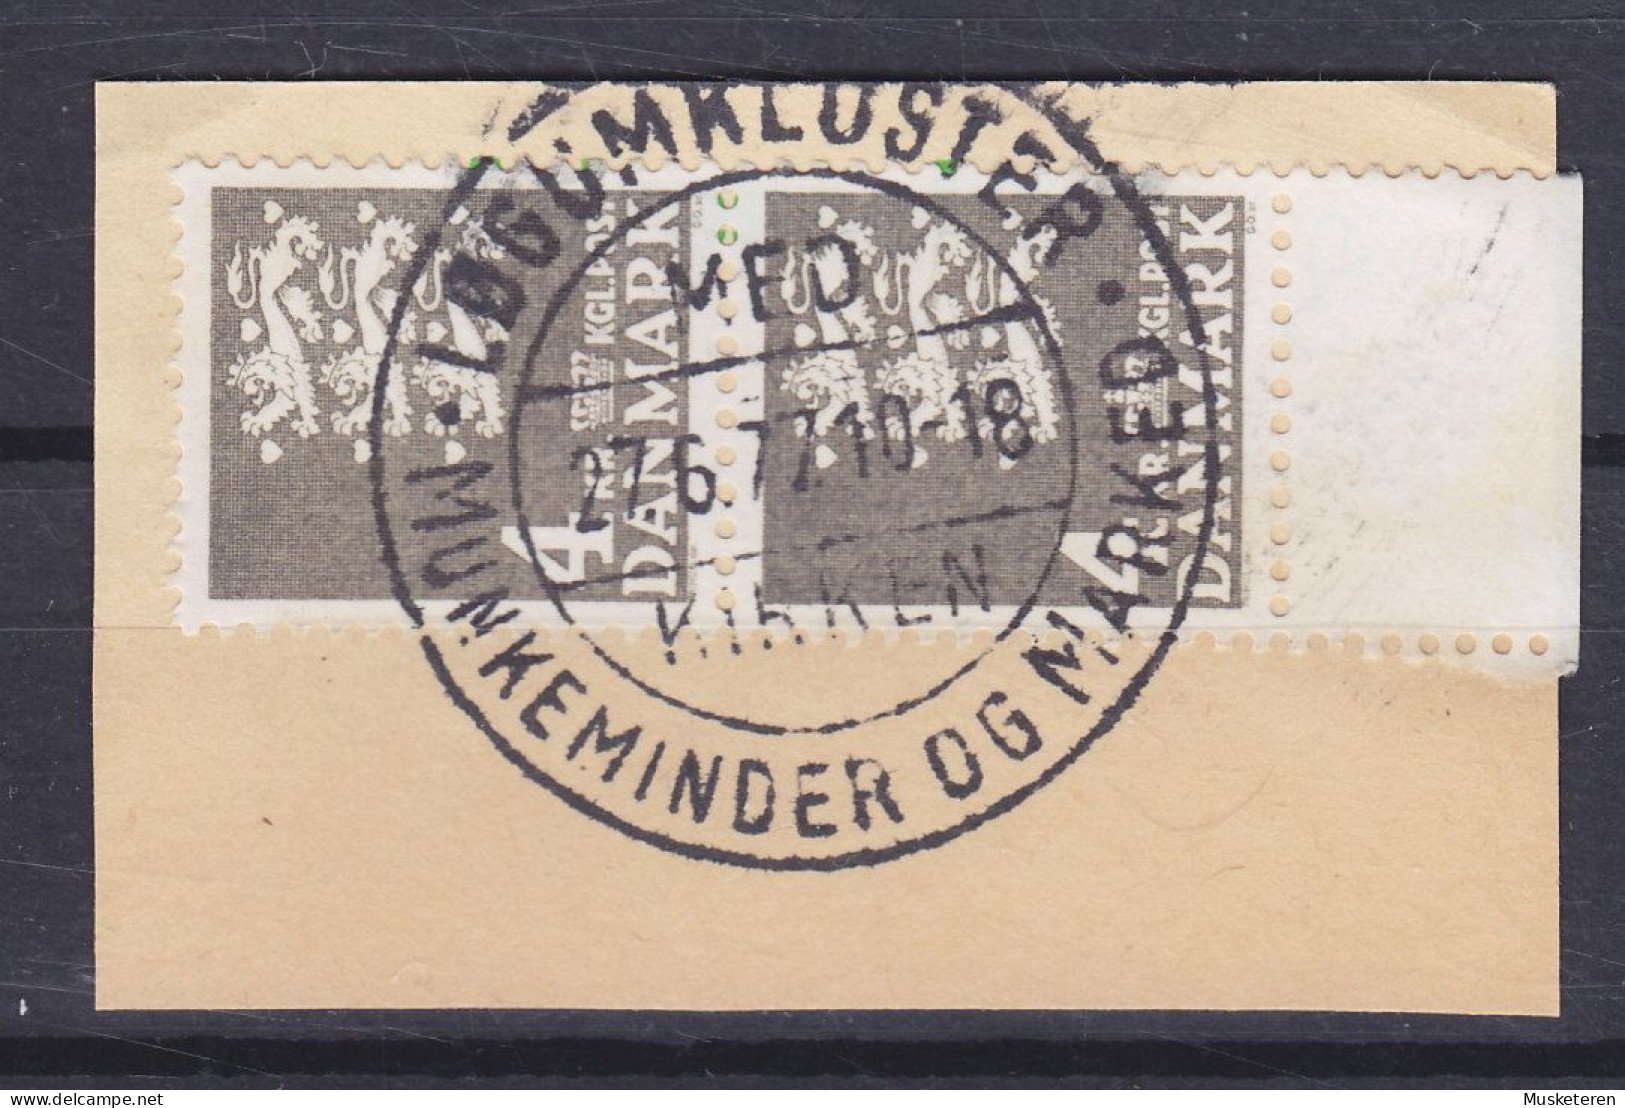 Denmark 1969 Mi. 484, 4.00 Kr Kleines Reichswappen Sonderstempel 'Kirken, Munkeminder Og Marked' LØGUMKLOSTER 1977 Clip - Usati